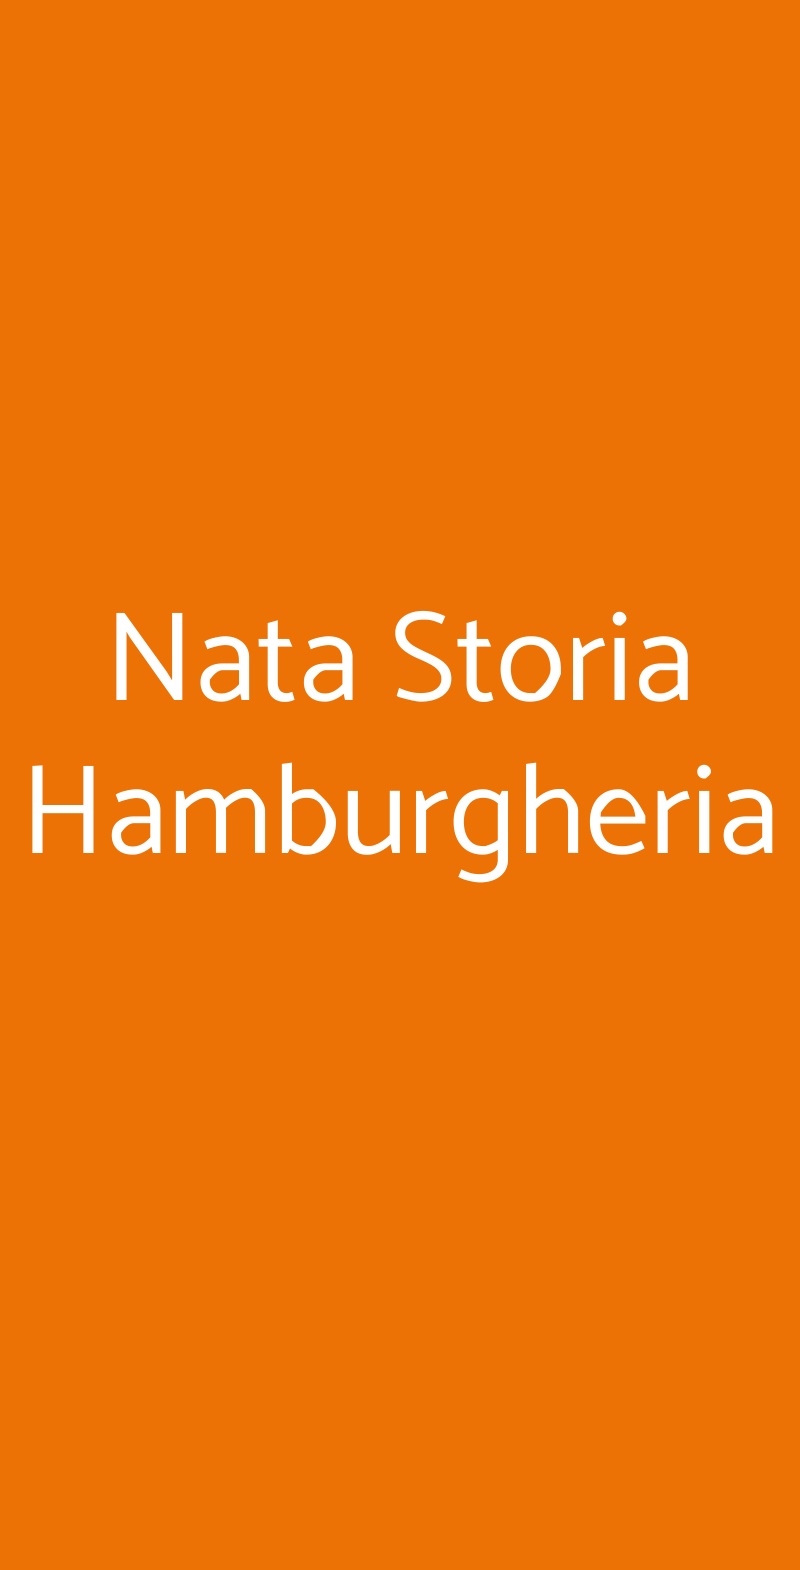 Nata Storia Hamburgheria Napoli menù 1 pagina